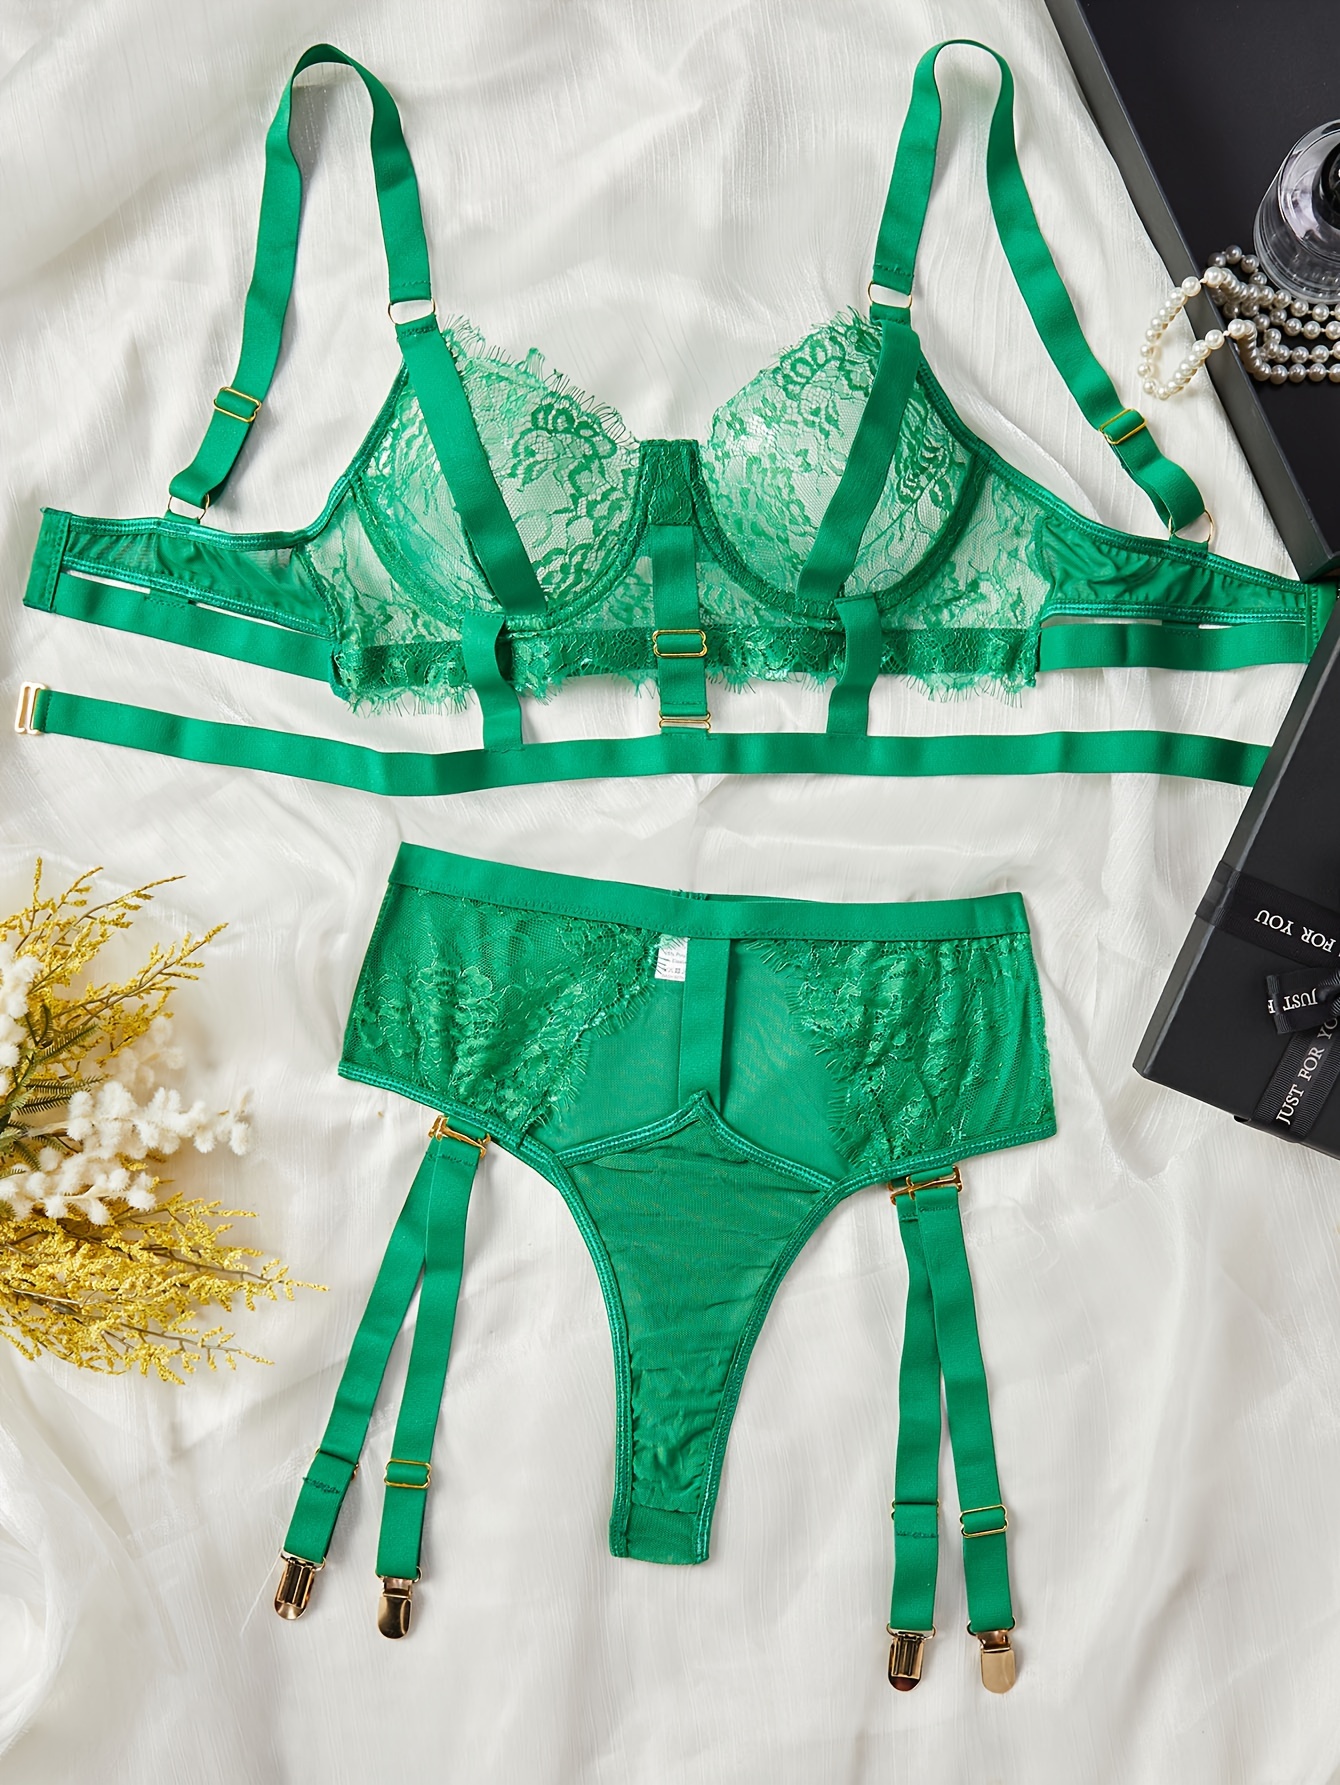 Satin Lingerie, Green Garter Belt Lingerie Set, Sexy Underwear